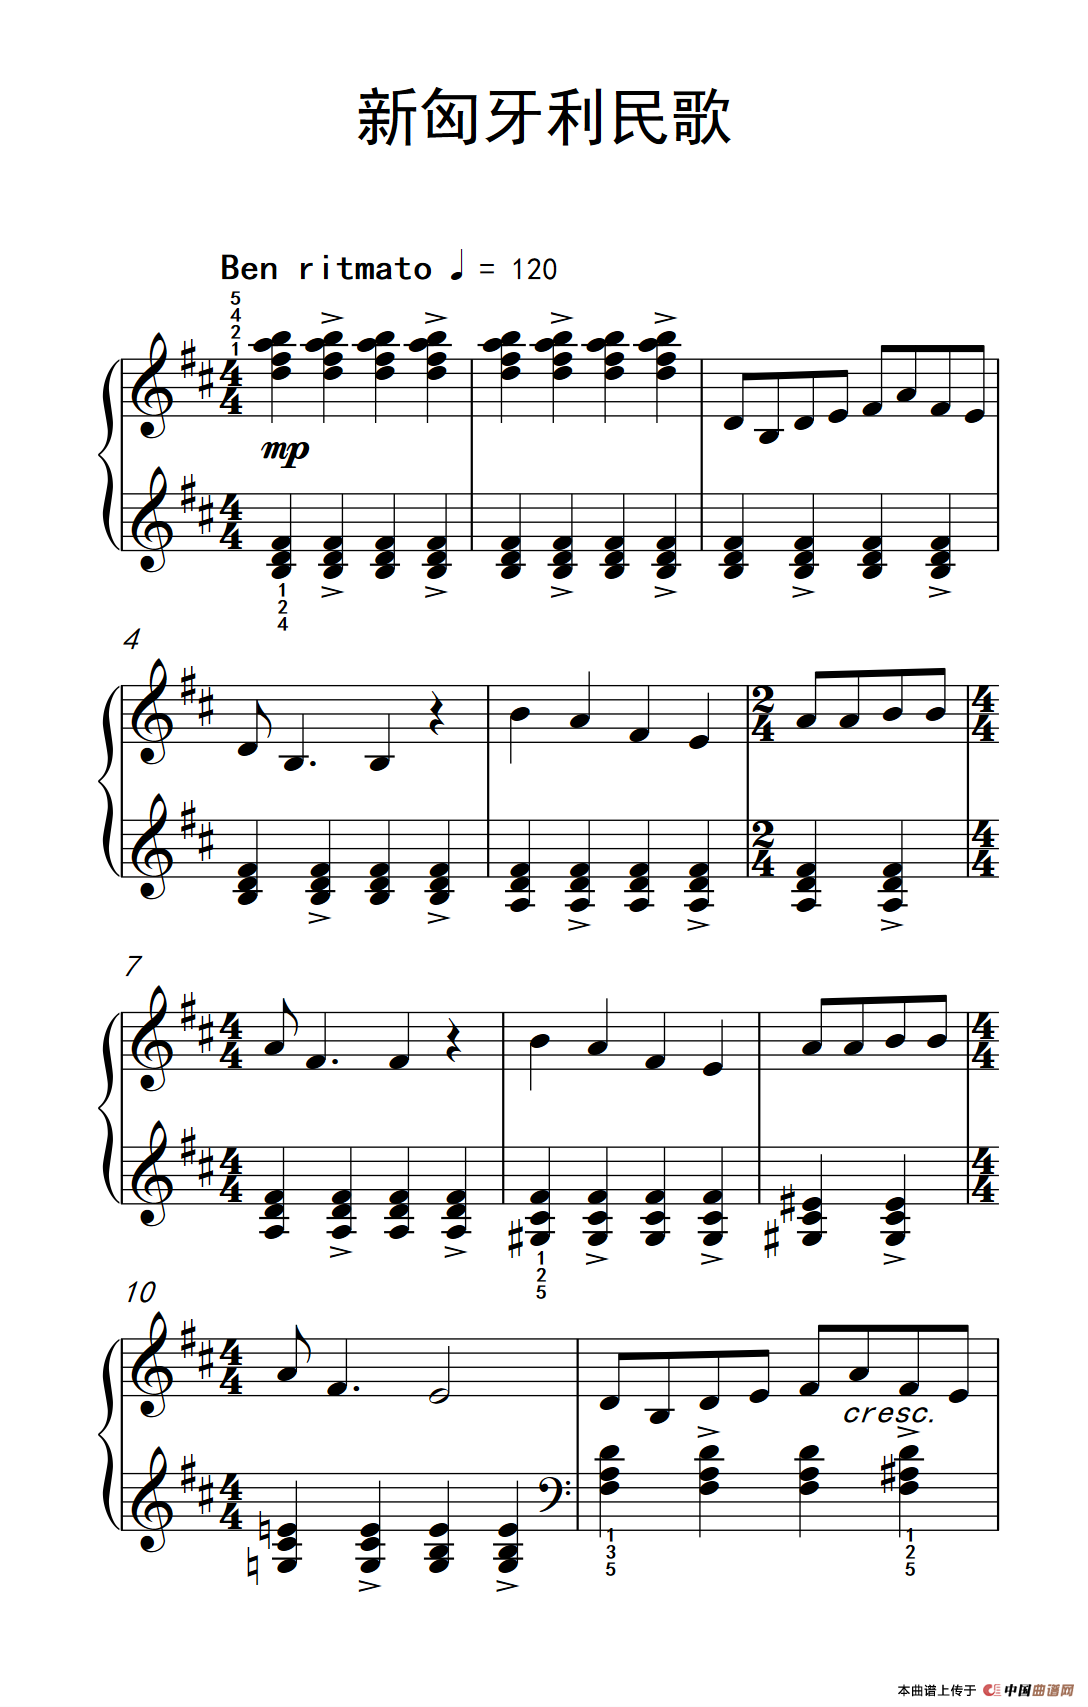 《新匈牙利民歌》钢琴曲谱图分享